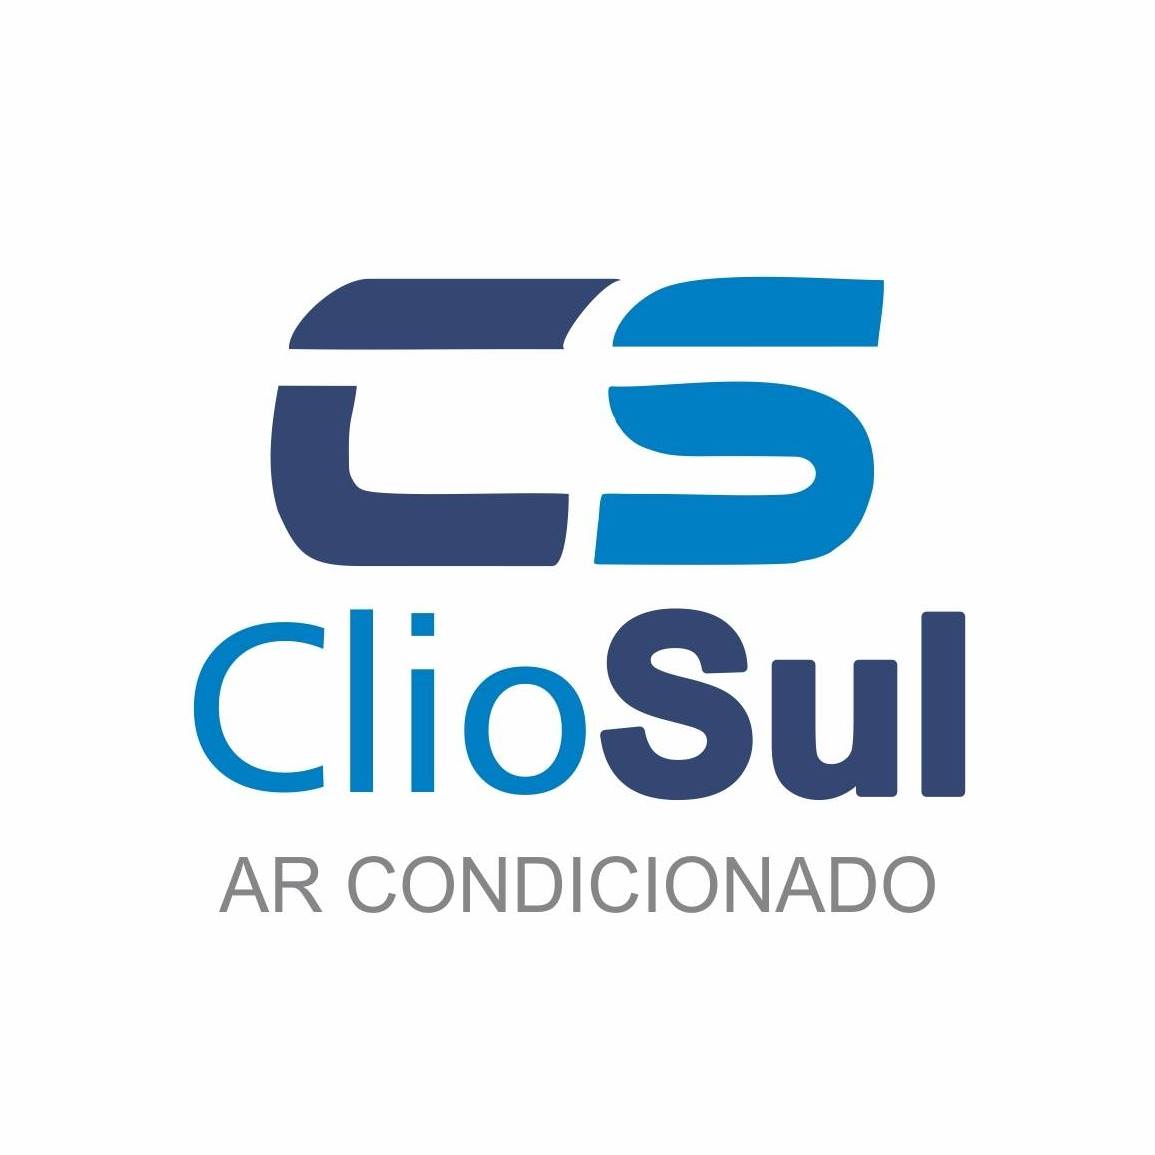 ClioSul